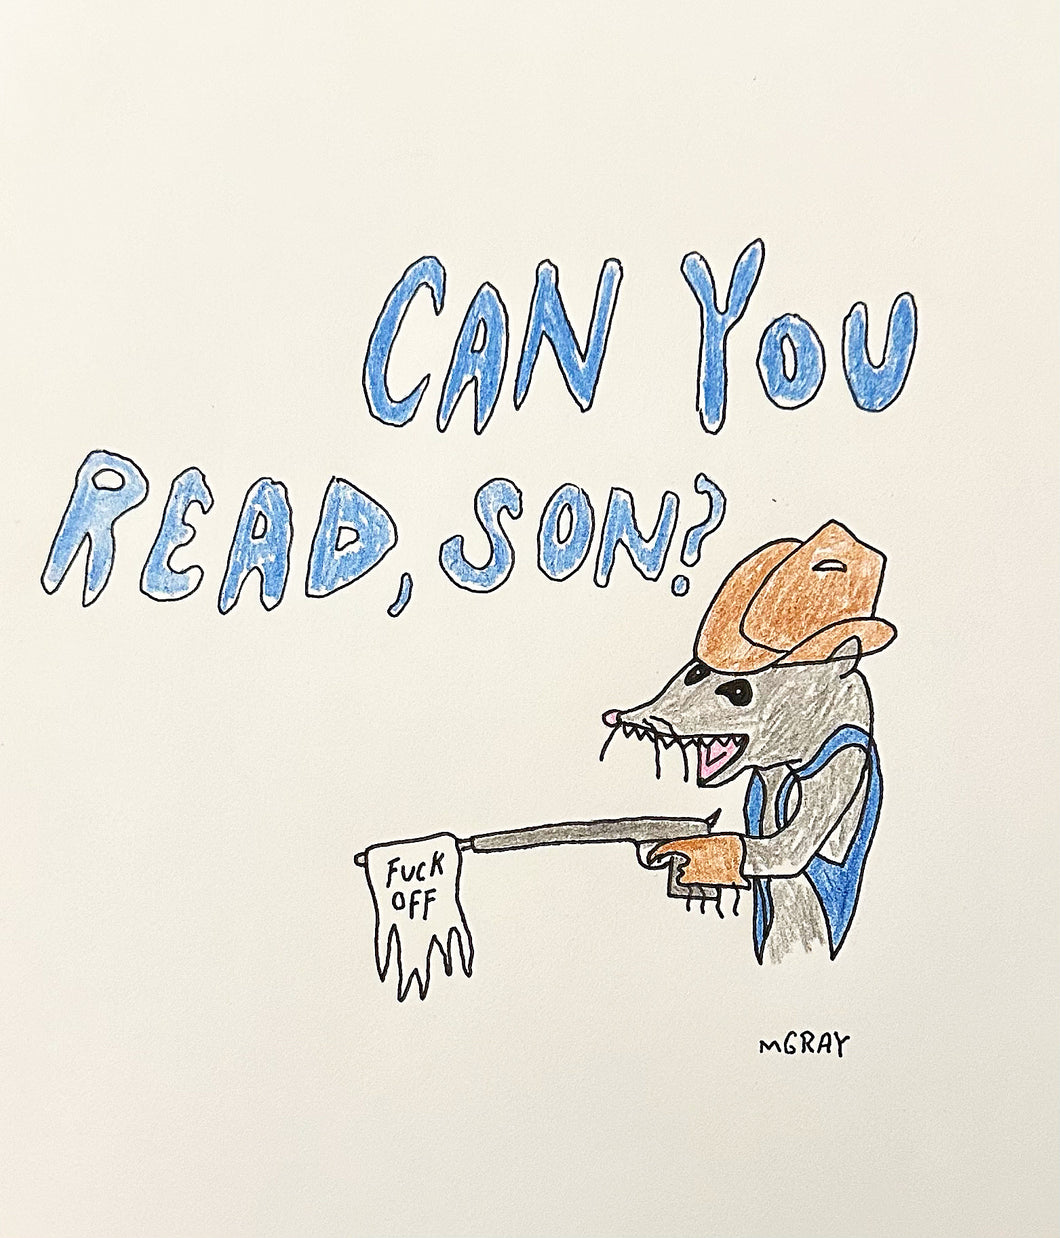 Can Ya Read, Son?